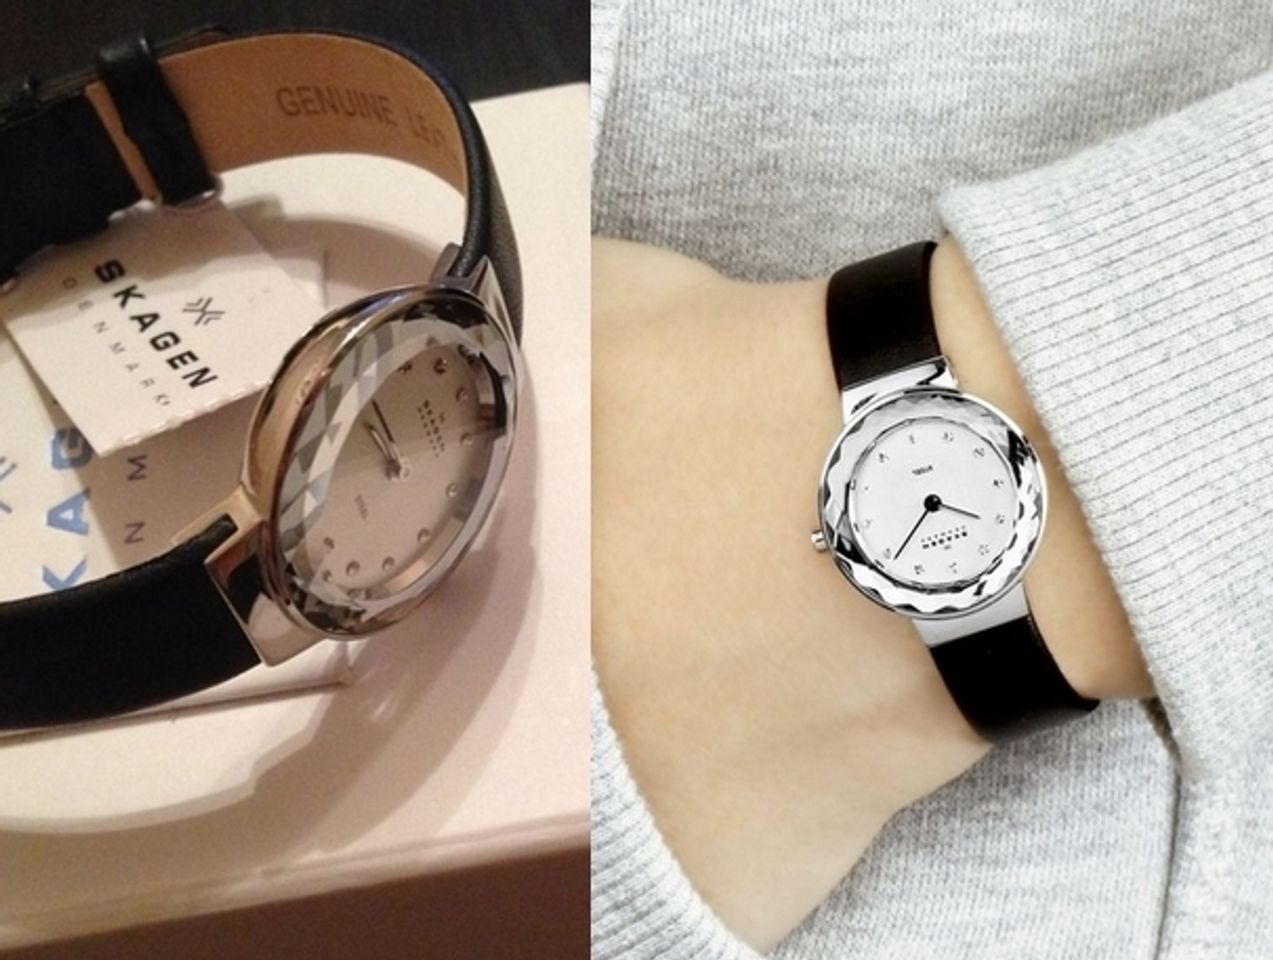 Chiếc đồng hồ Skagen nữ này không kén tay và rất dễ kết hợp với nhiều trang phục khác nhau